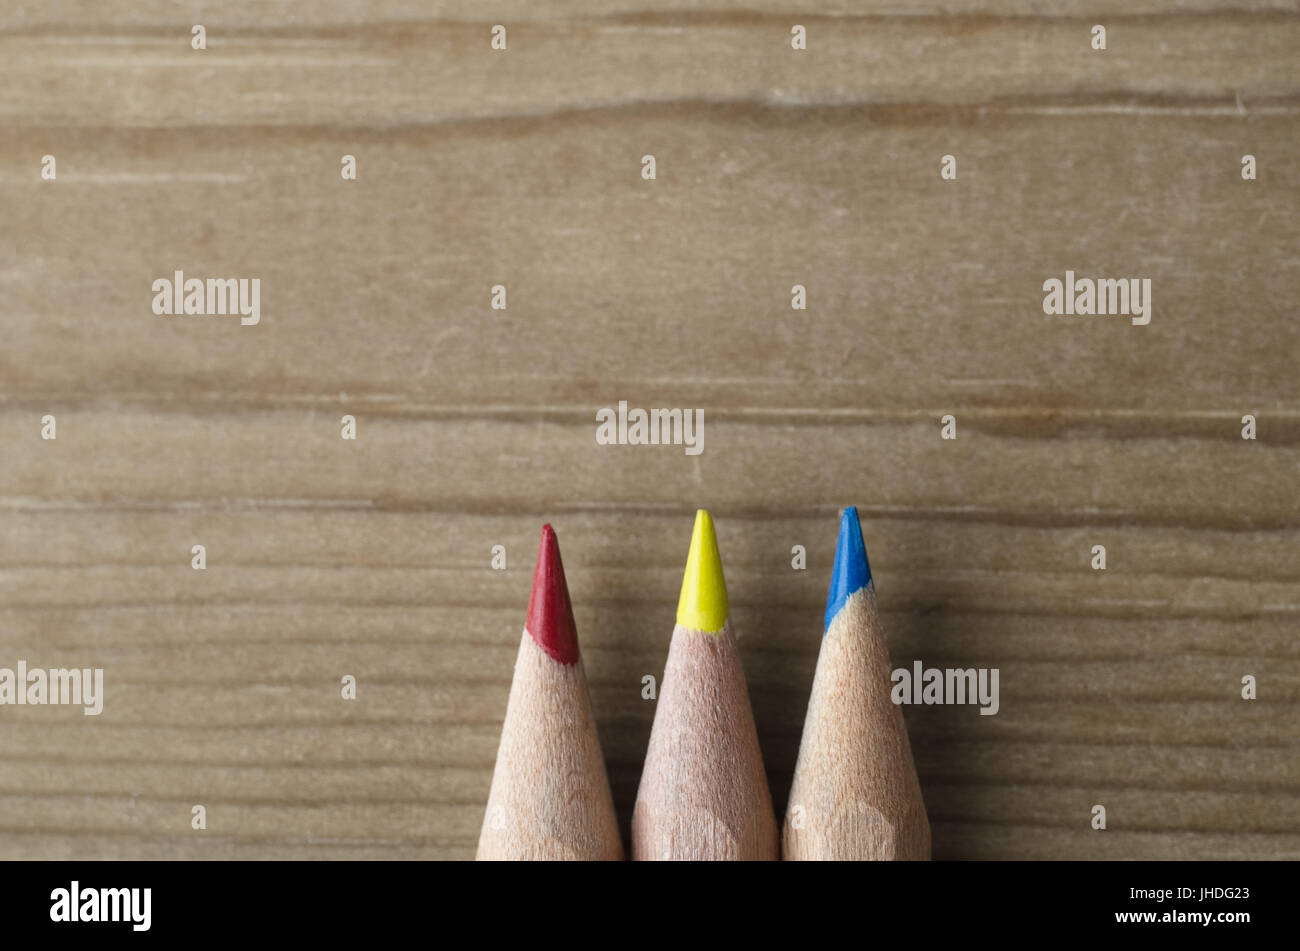 Trois crayons alignés dans une rangée et vers le haut vers l'espace de copie en bois, représentant le modèle de couleurs primaires rouge, jaune et bleu. Banque D'Images